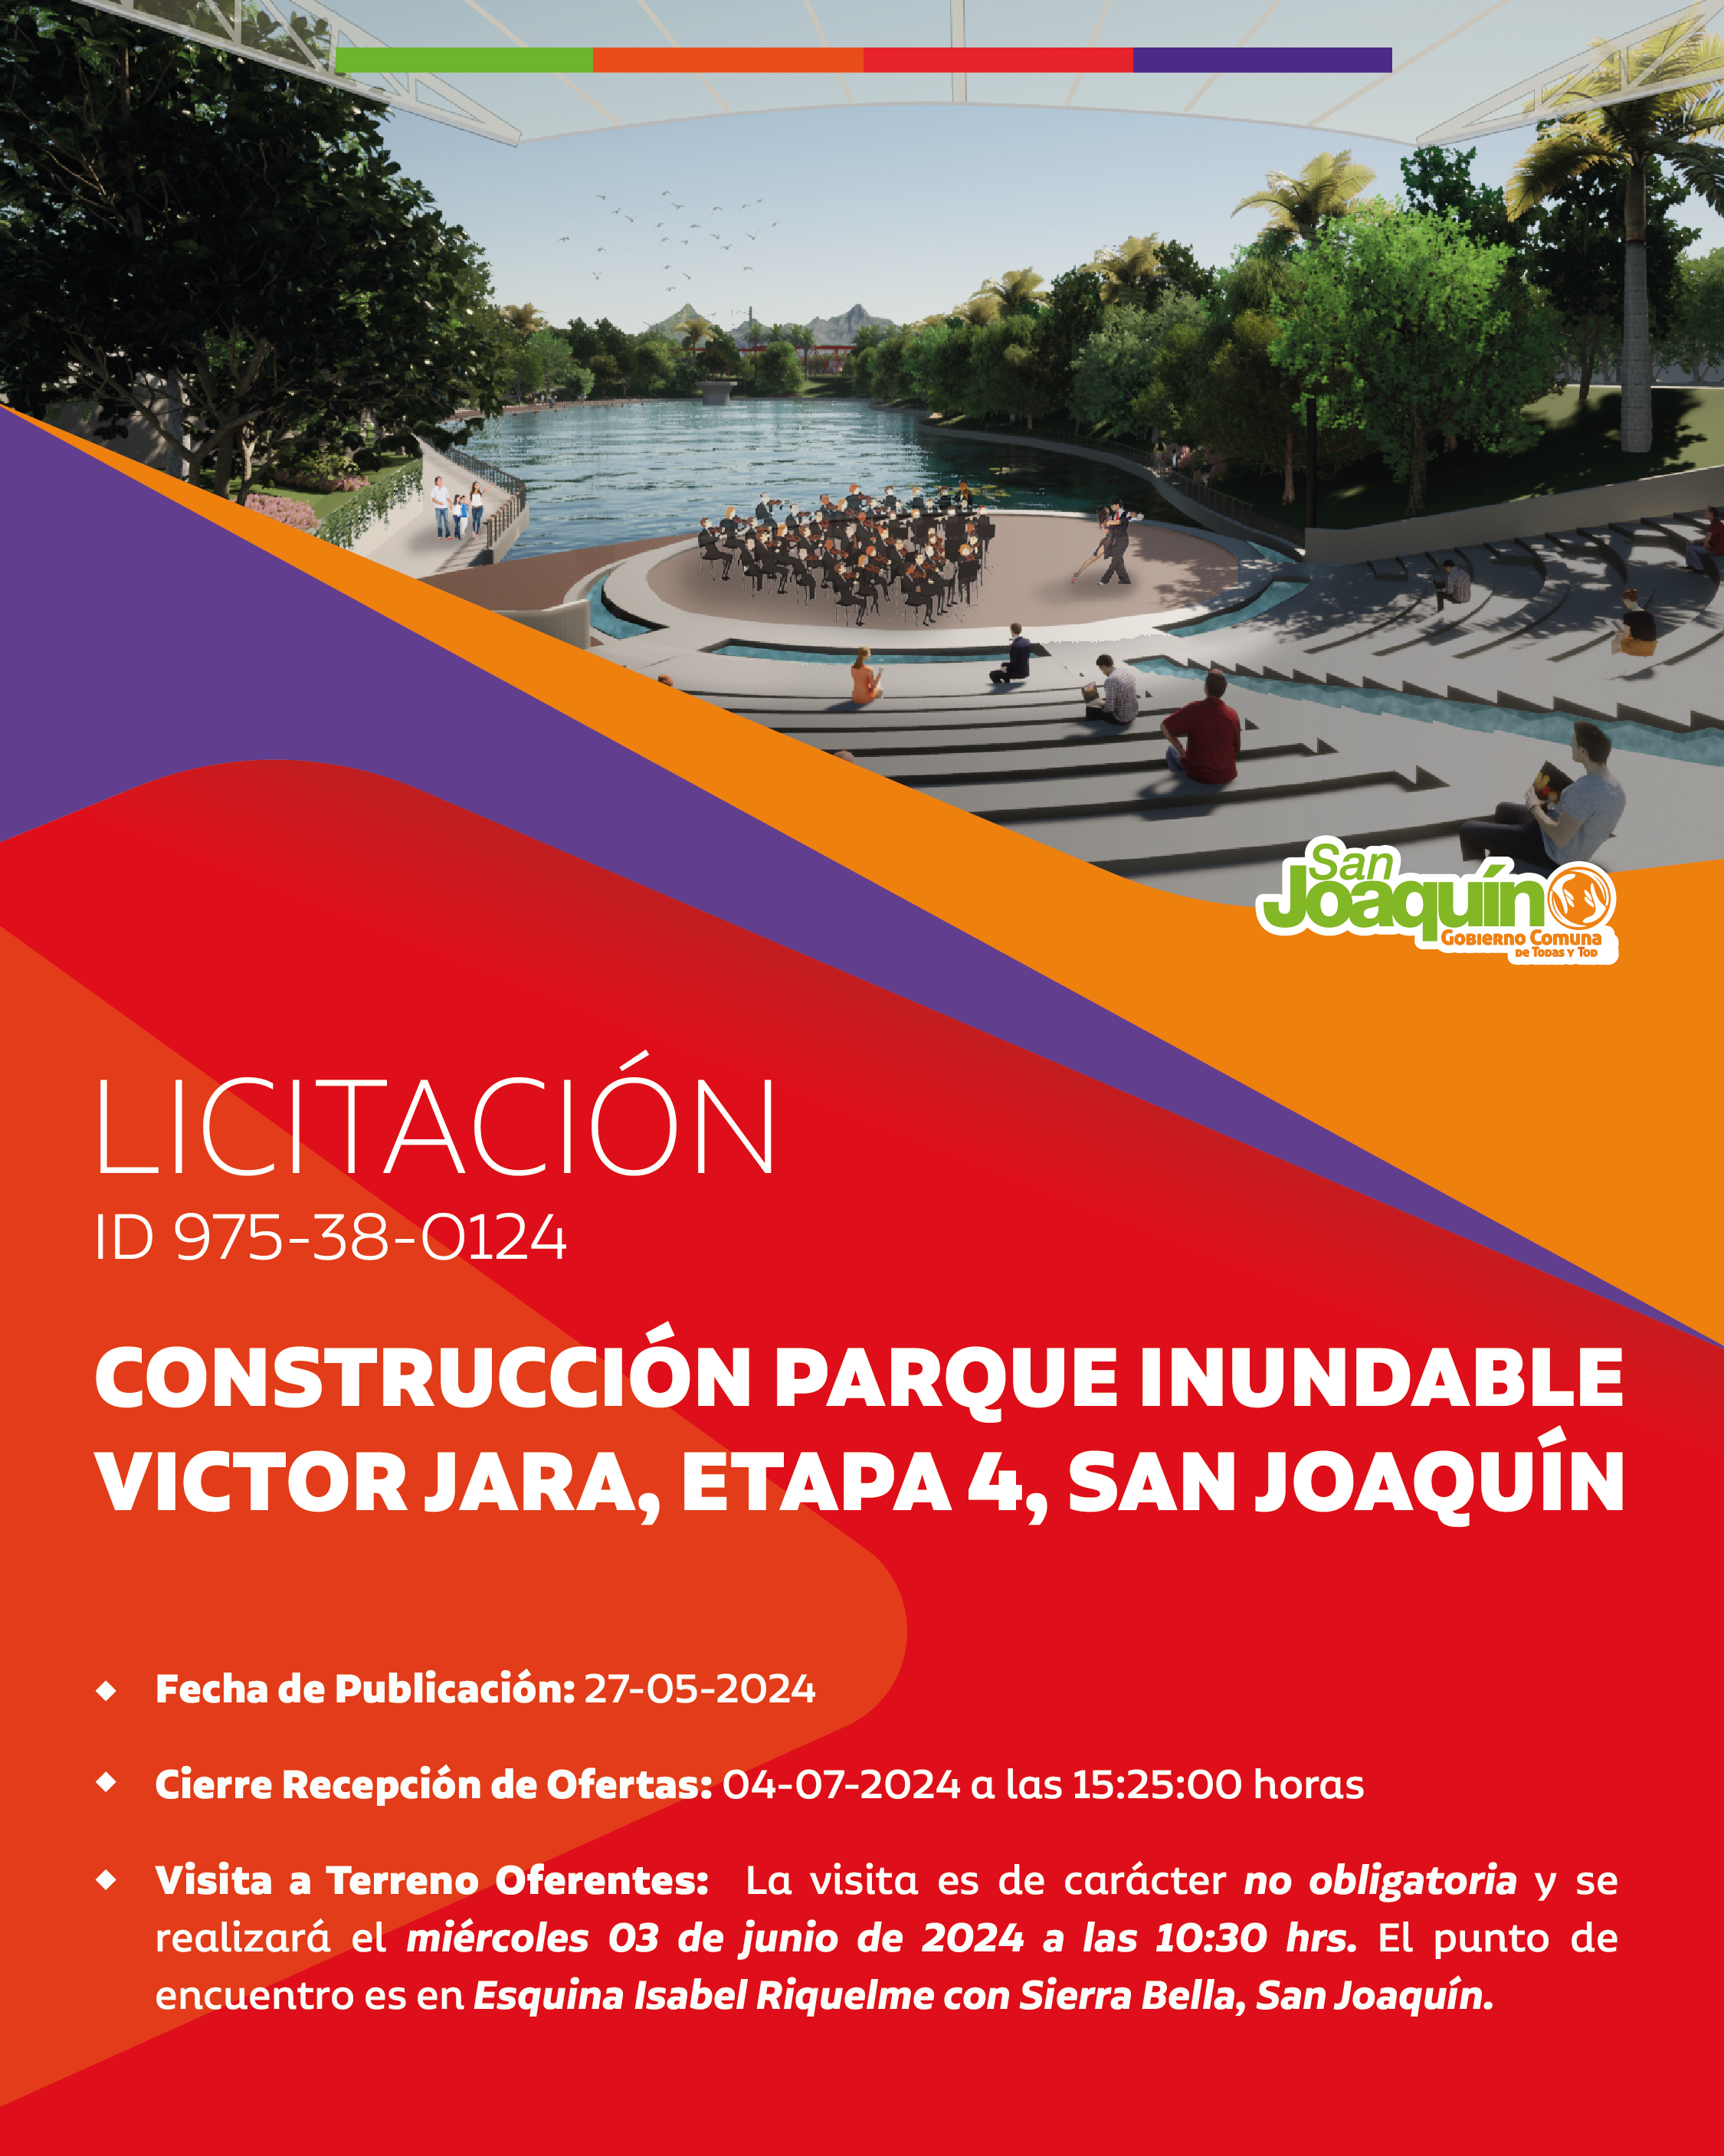 Licitacion-RRSS-Construccion-ParqueVictorJara-04